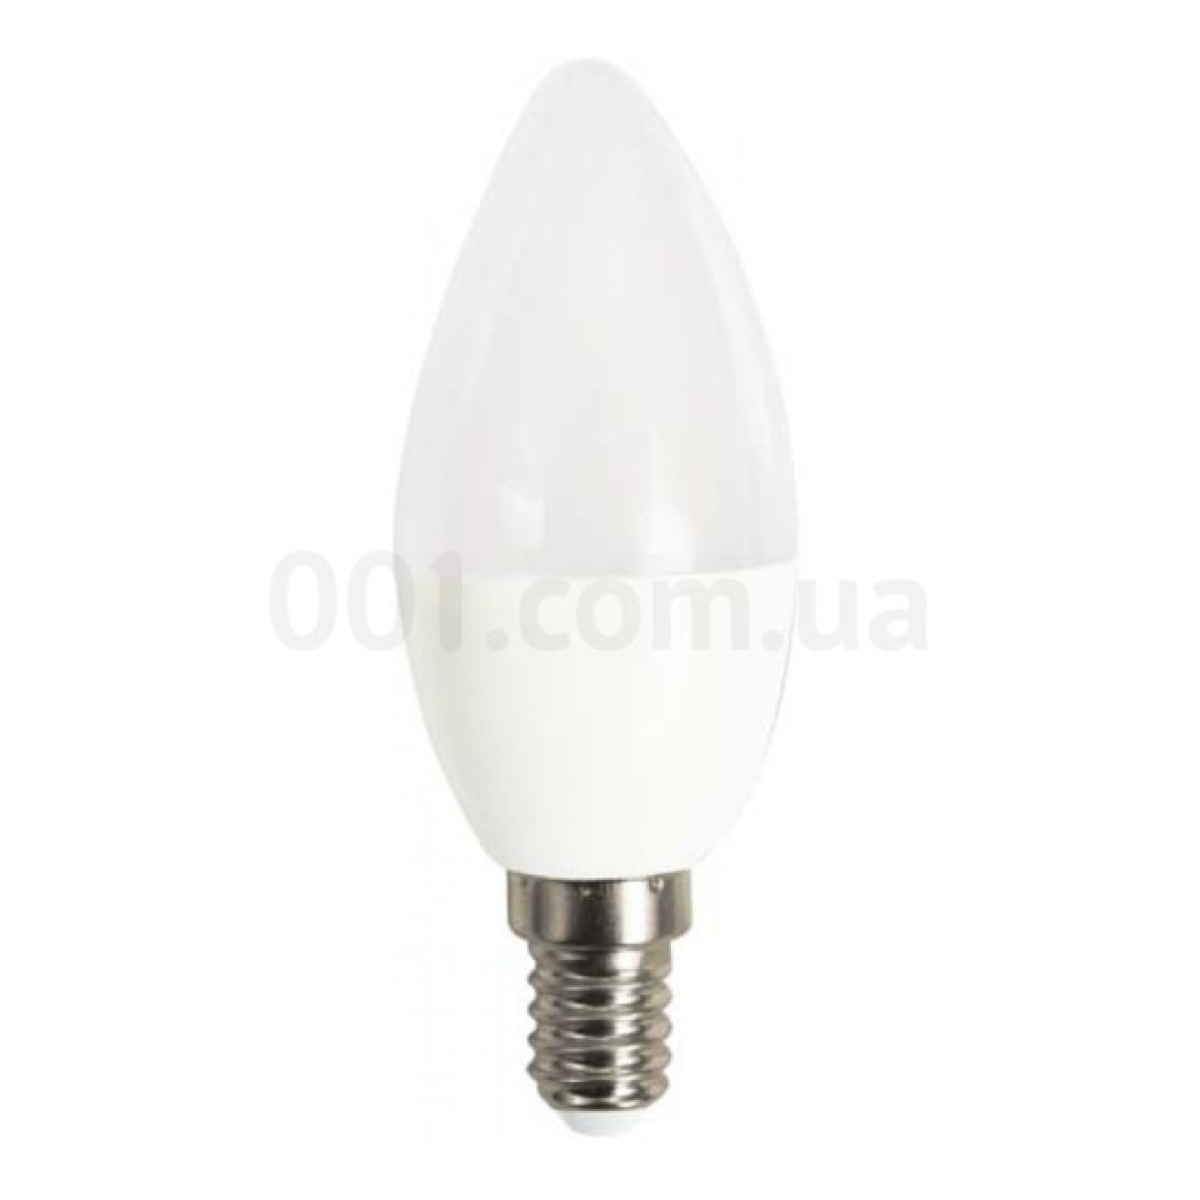 Світлодіодна лампа LB-737 C37 (свічка) 6Вт 2700K E14, Feron 256_256.jpg